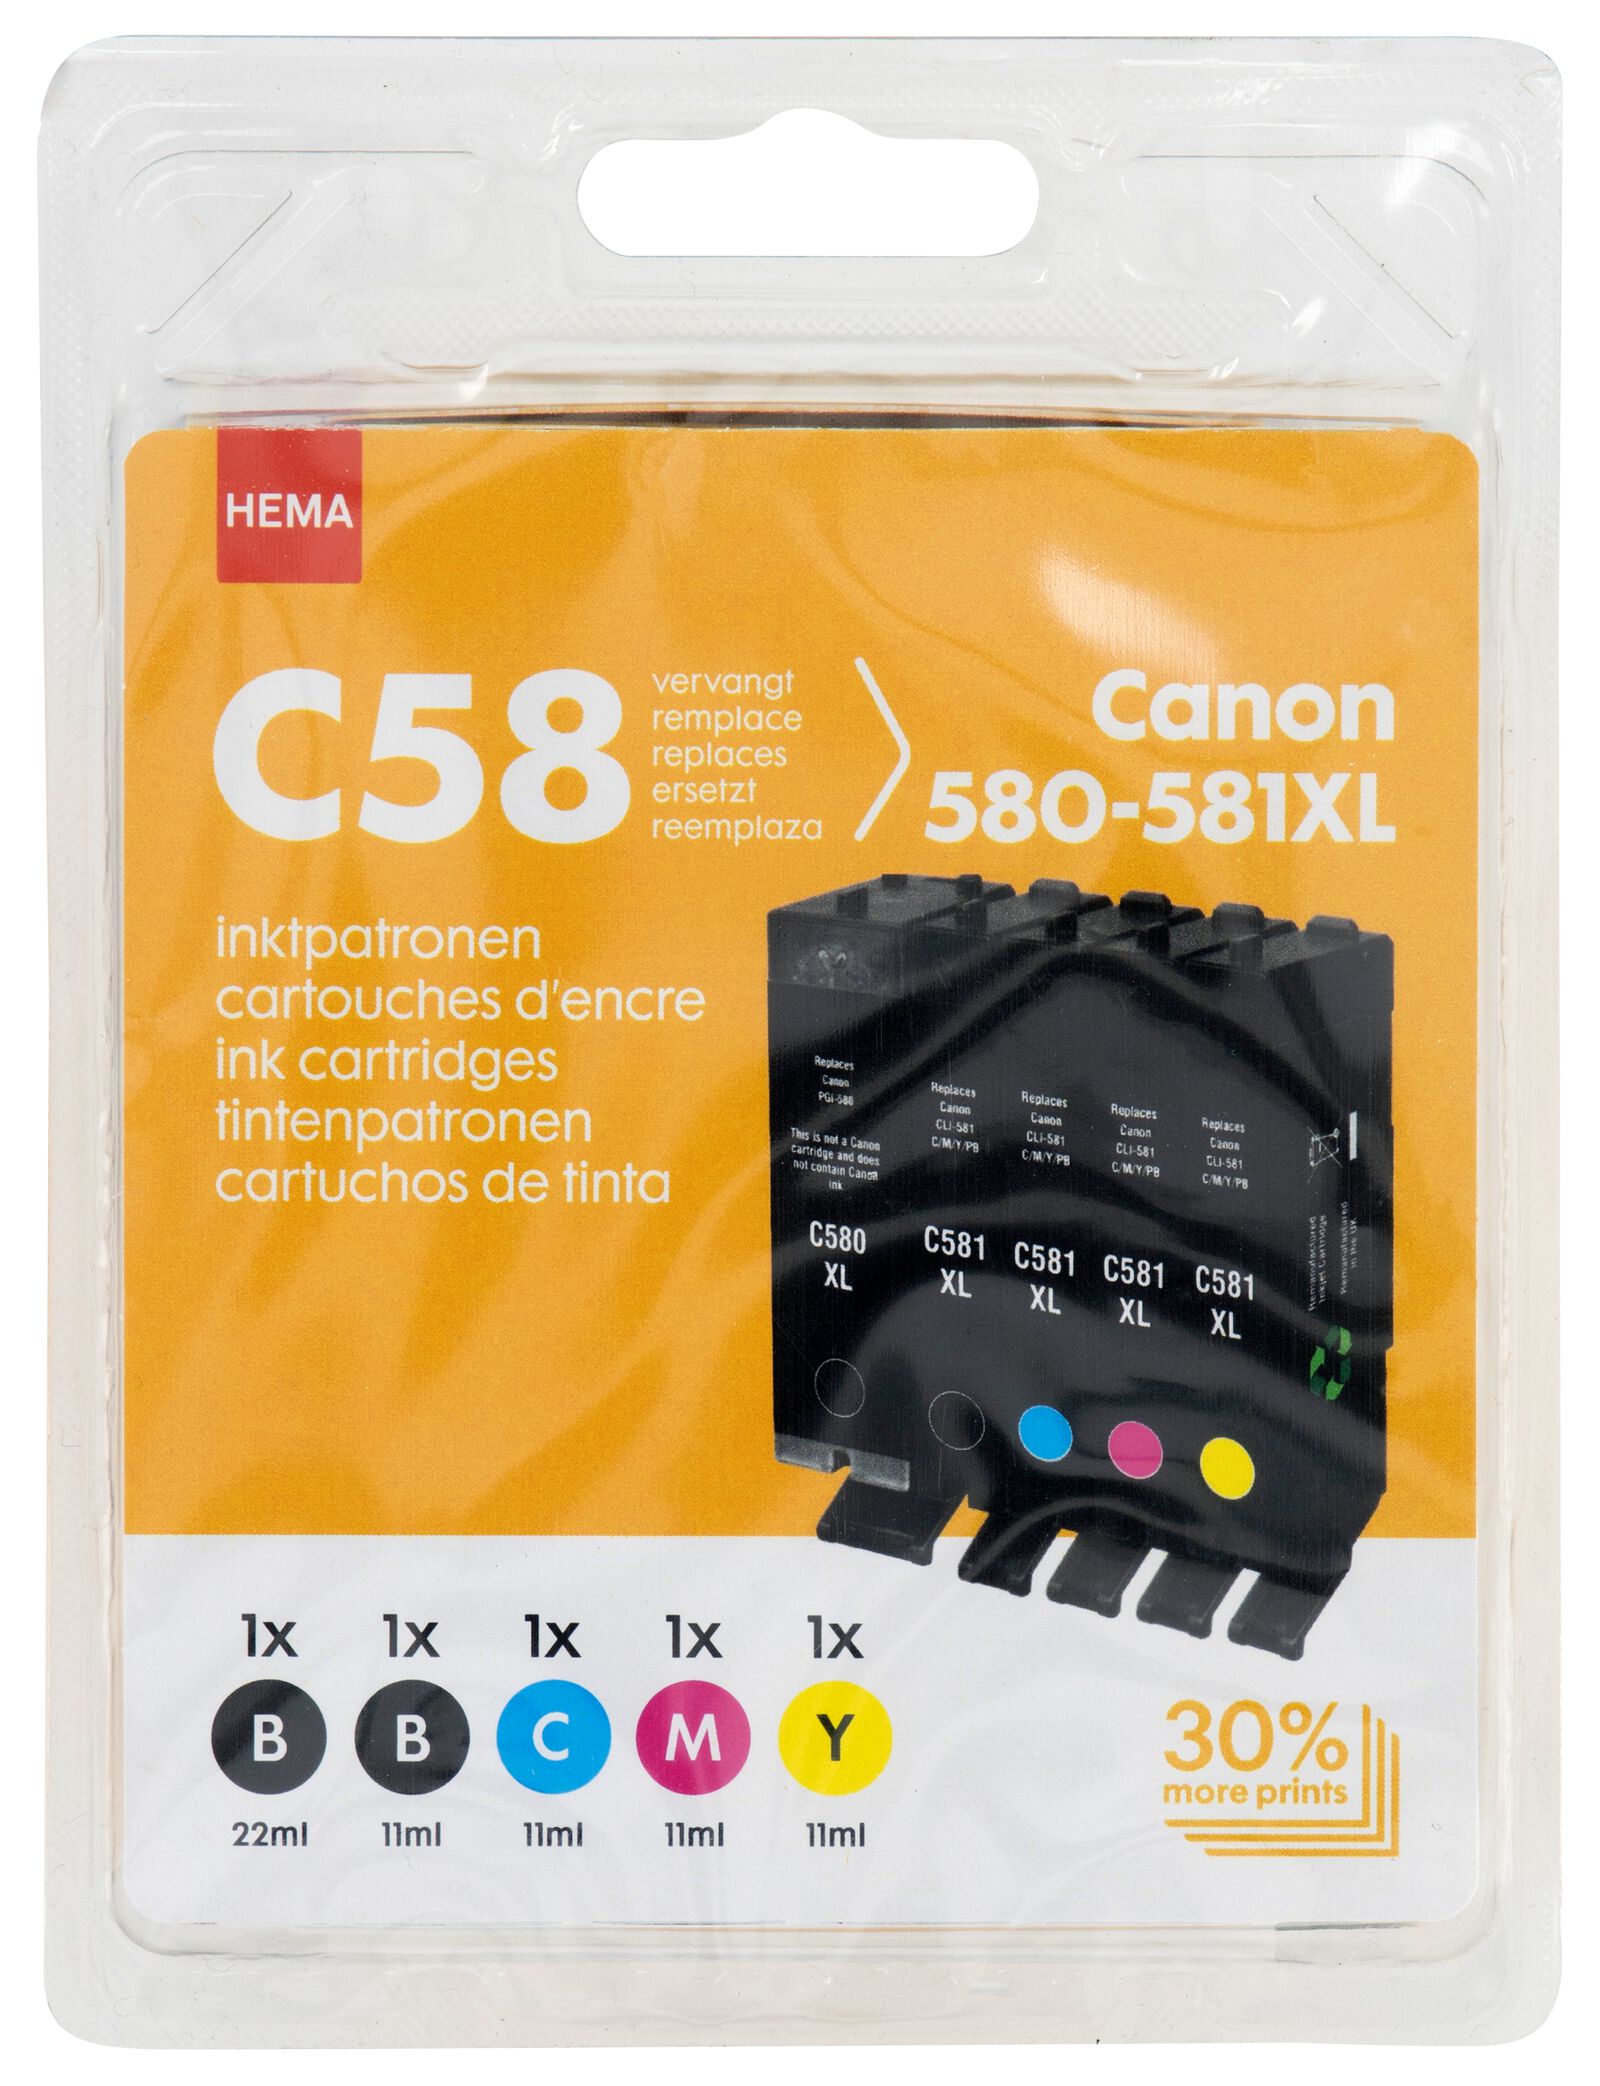 cartouche HEMA C58 remplace Canon 580-581XL noir/couleur - HEMA